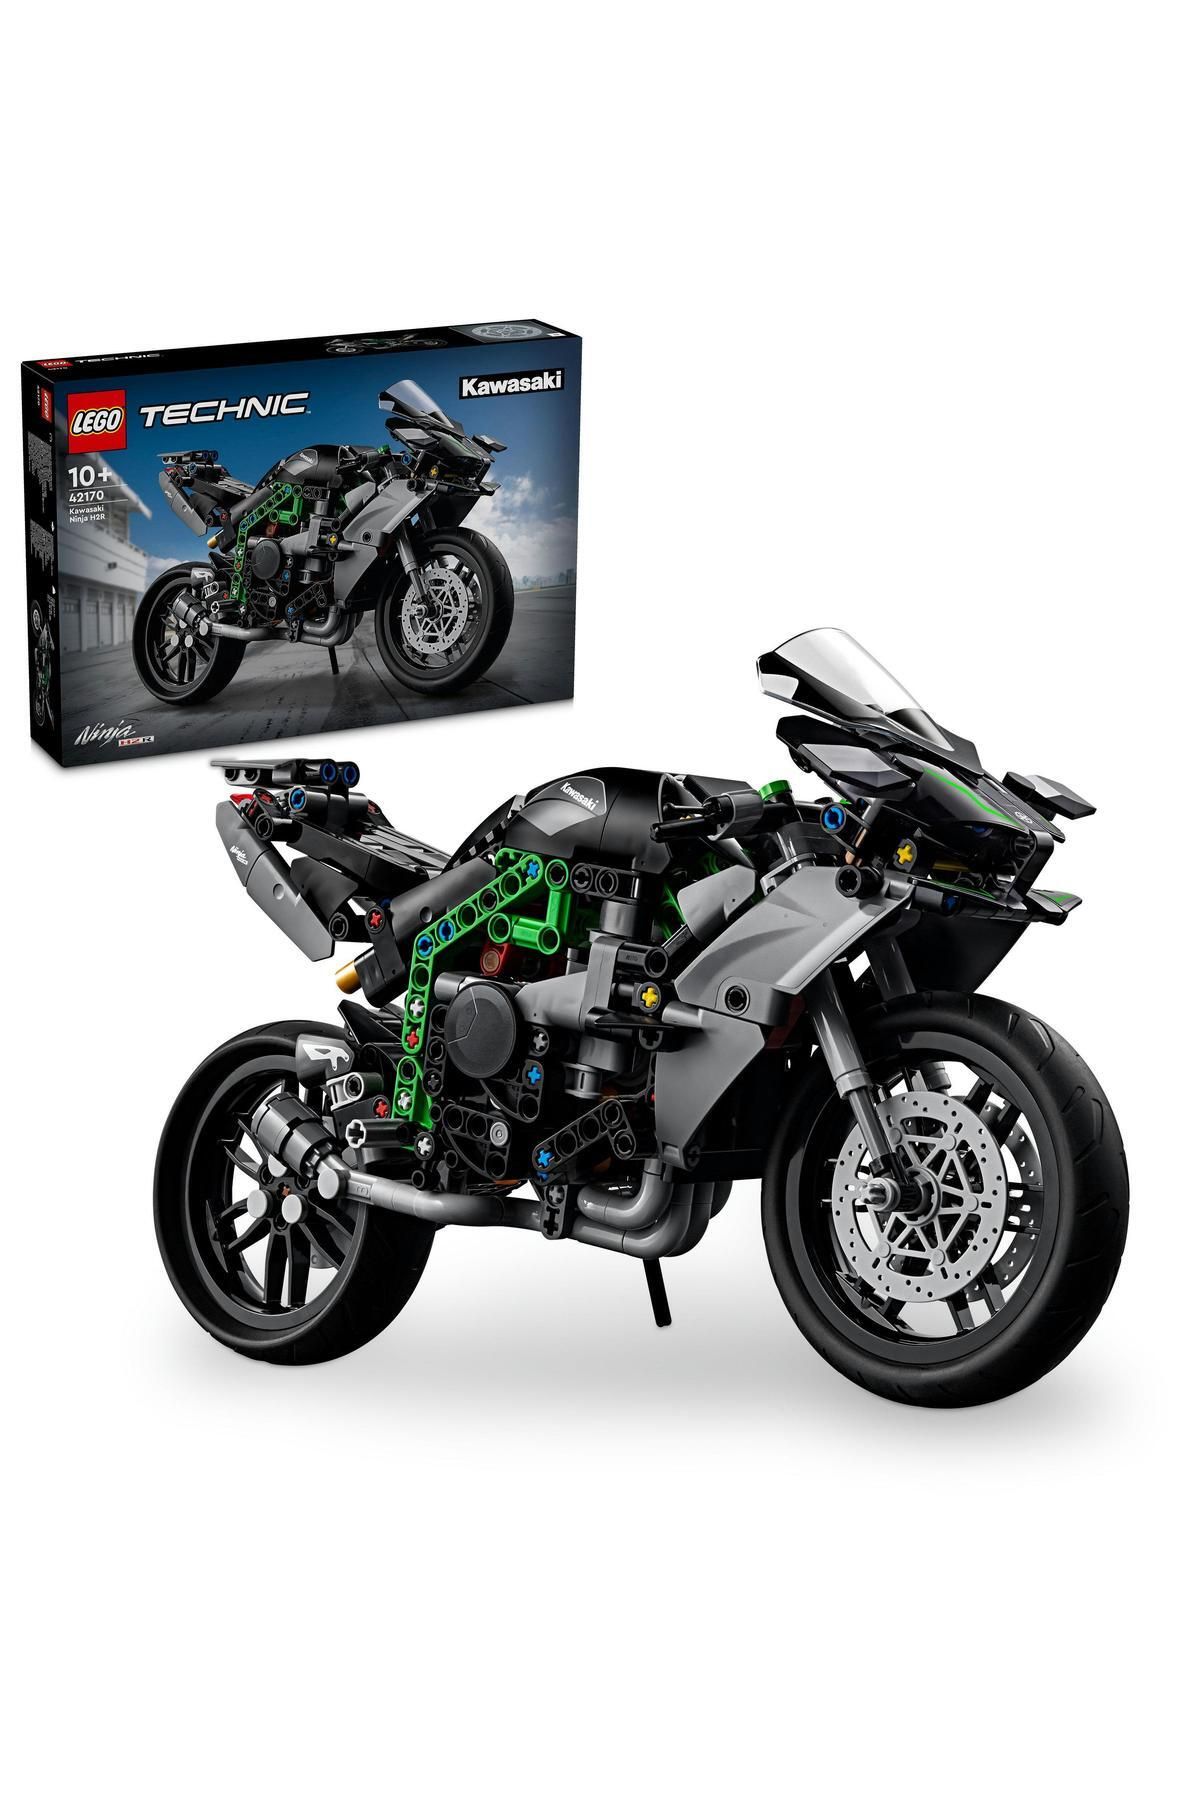 LEGO ® Technic Kawasaki Ninja H2R Motosiklet 42170 - 10 Yaş ve Üzeri İçin Yapım Seti (643 Parça)